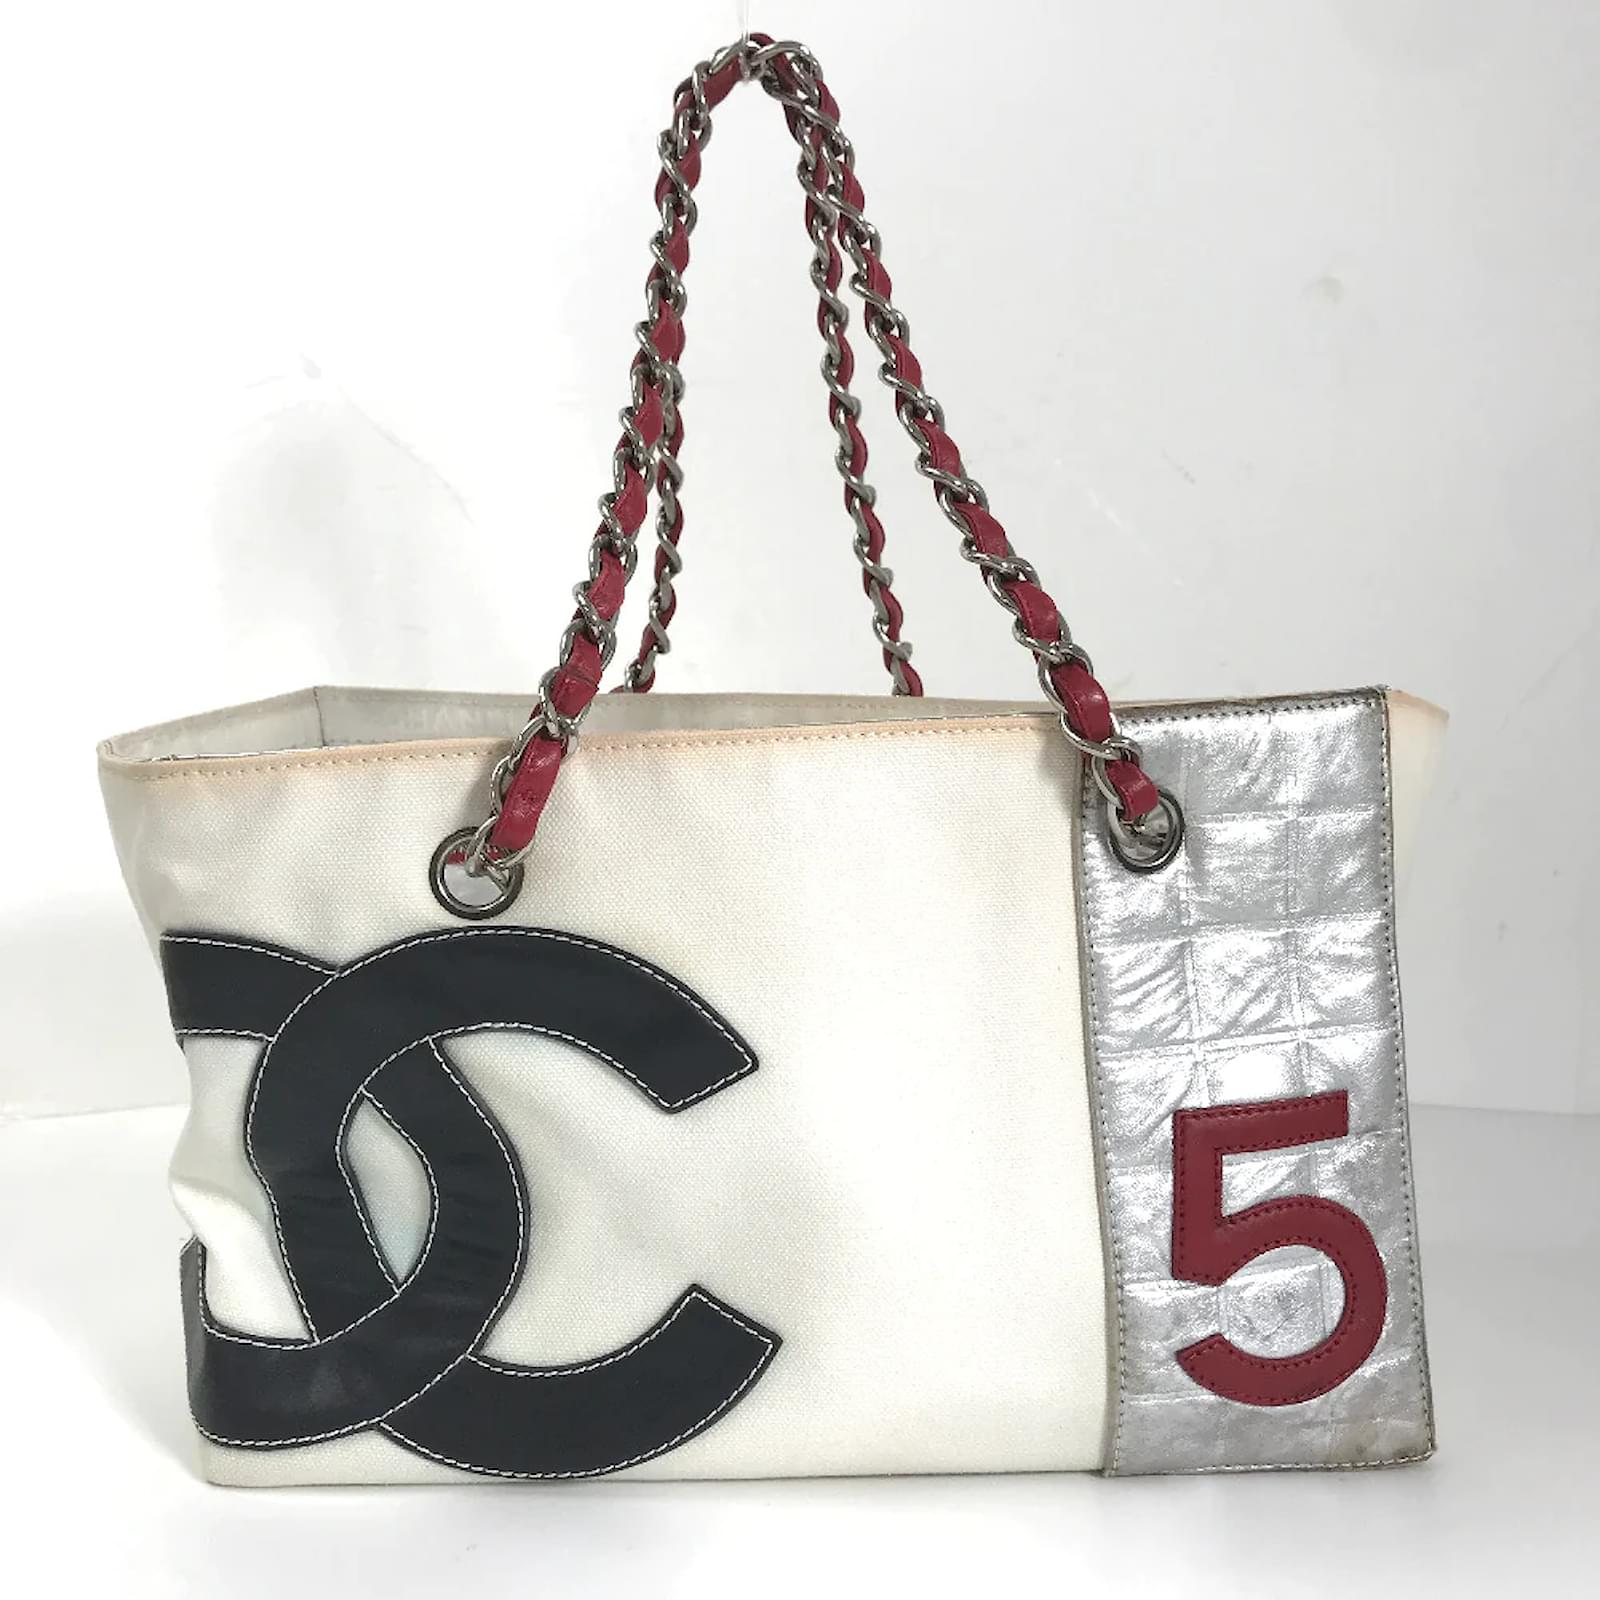 Chanel White & Metallic Canvas No 5 Shopping Tote Q6B0410EWB002